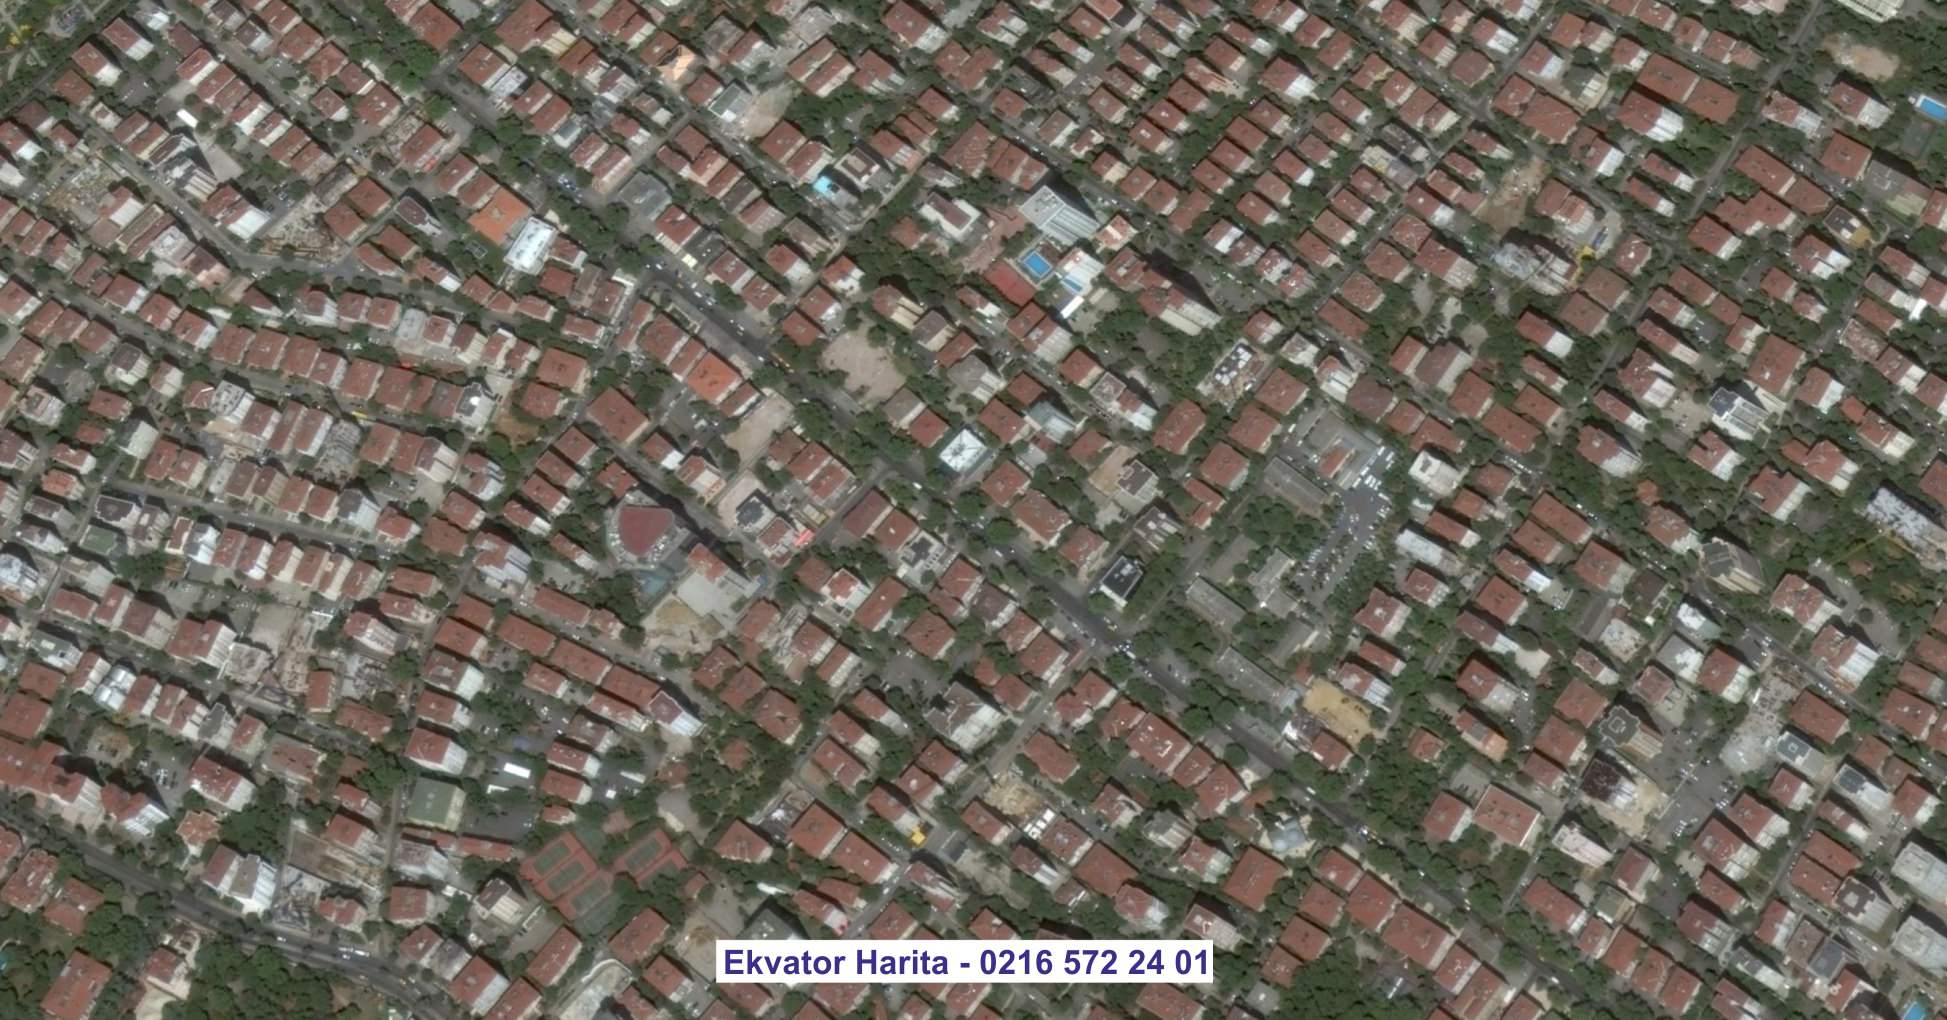 İstanbul Uydu Görüntüsü Örnek Fotoğrafı